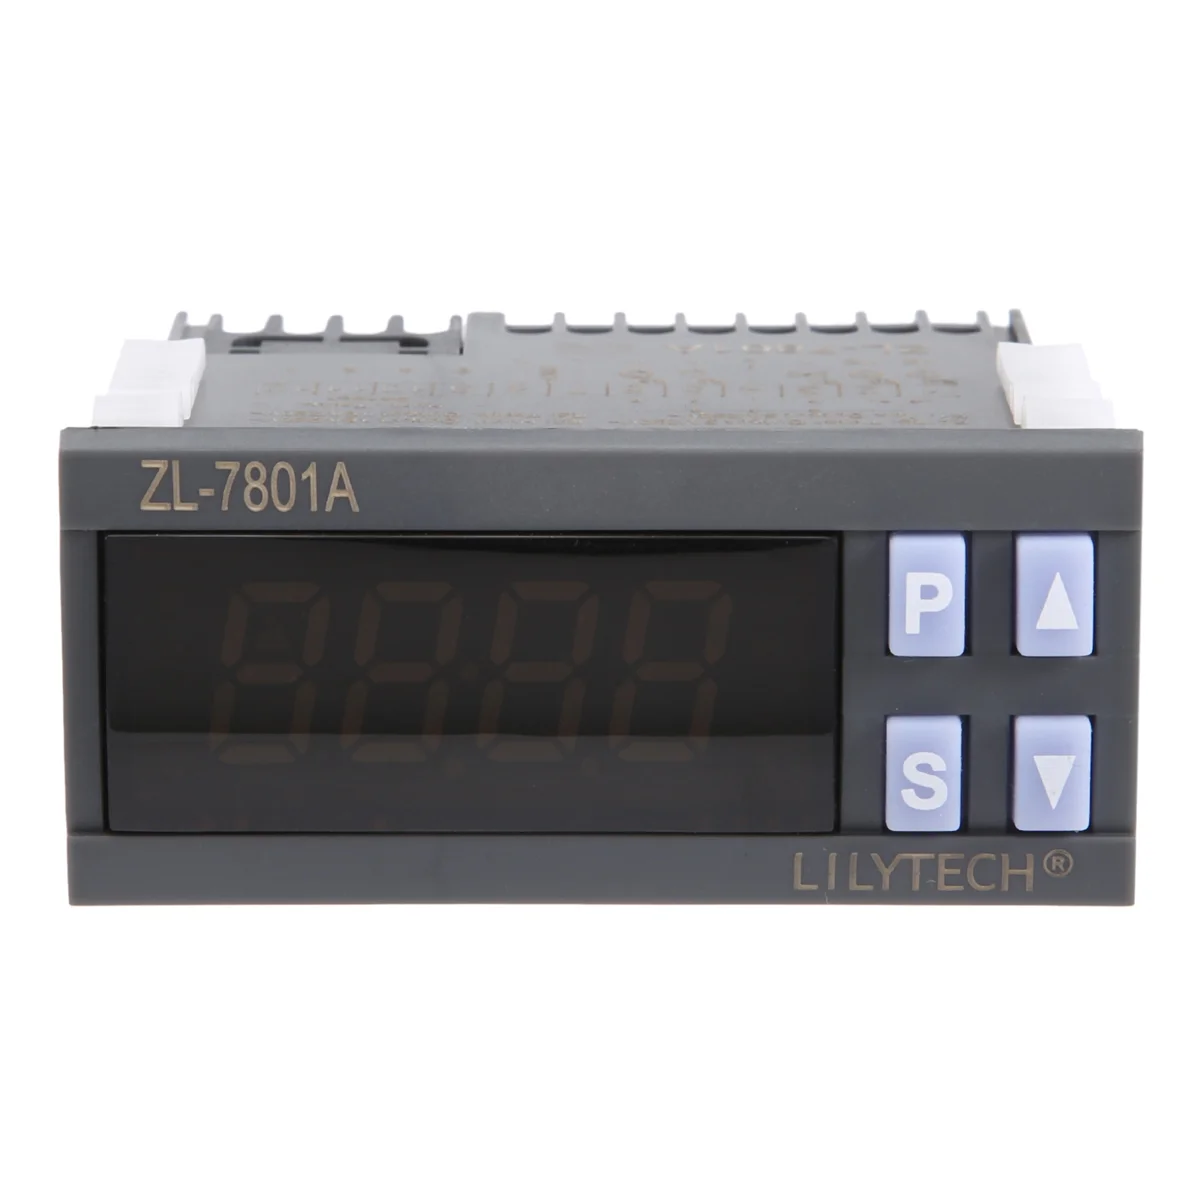 Lilytech ZL-7801A, universal, allgemein, temperatur und feuchtigkeit regler, thermostat und hygrostat, thermistat thermostat